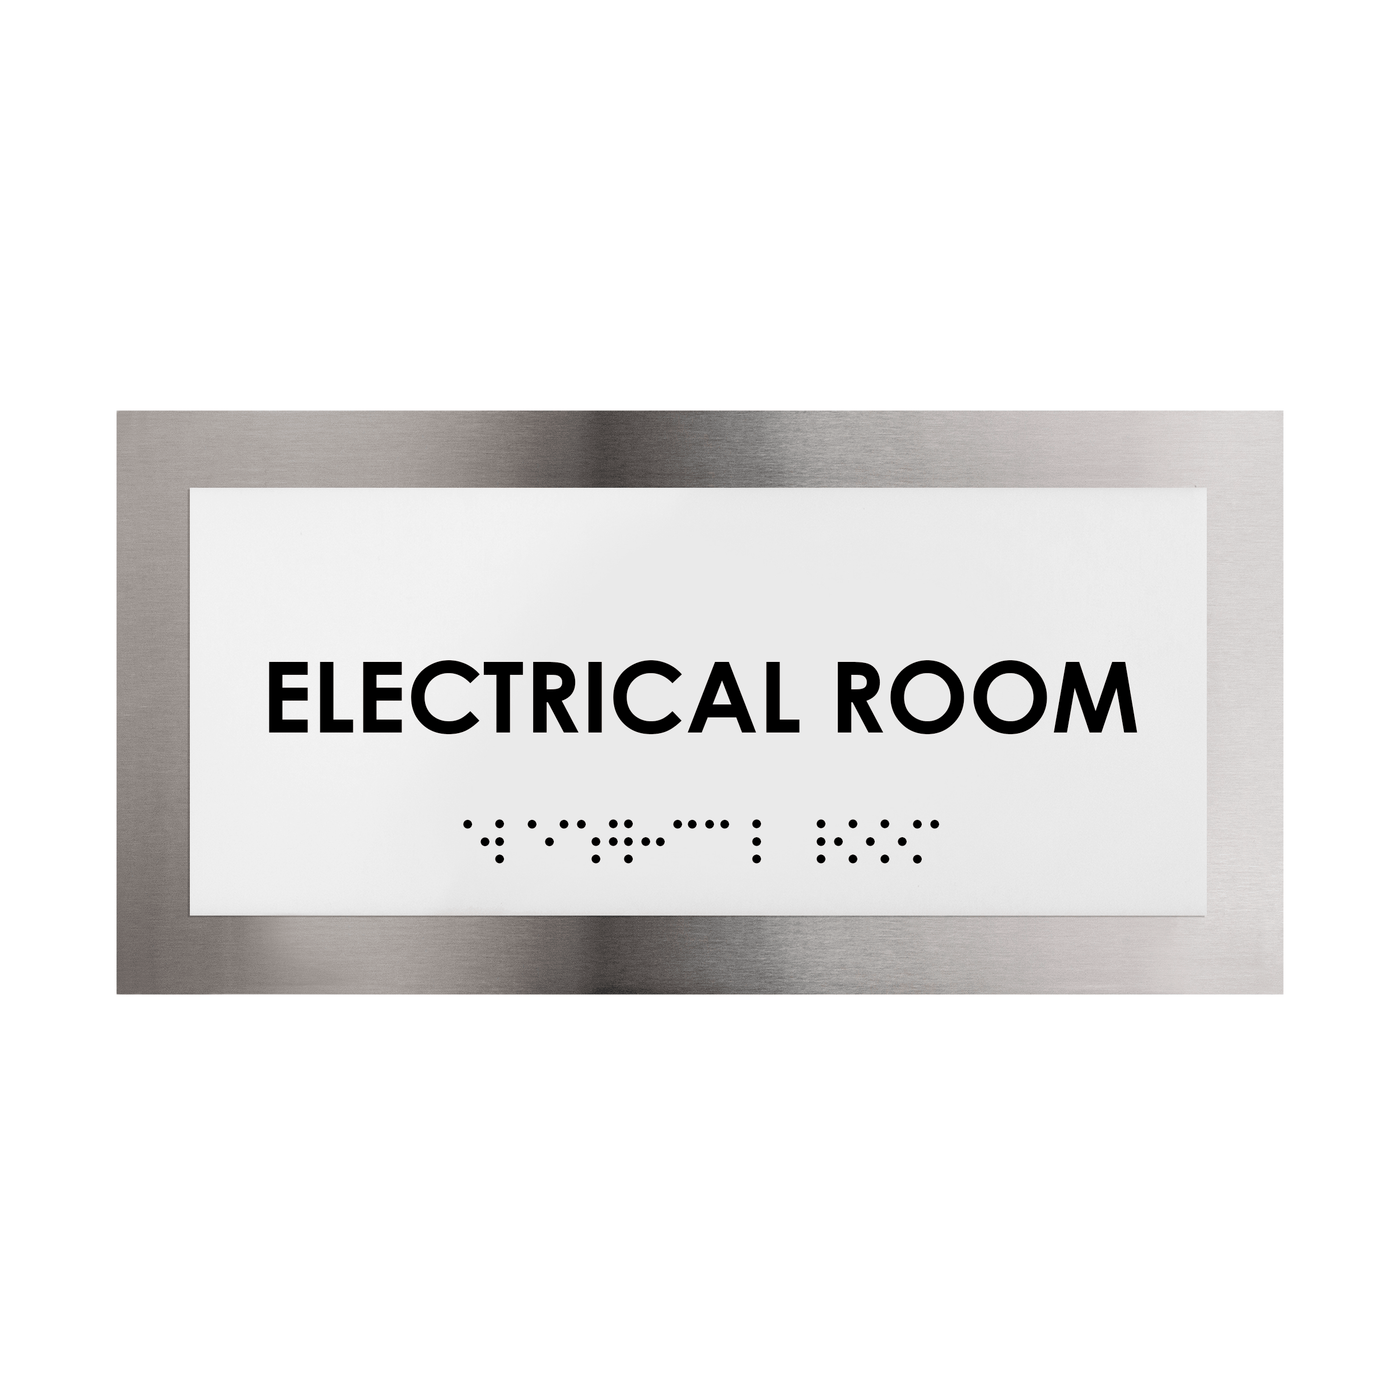 Door Signs - Electrical Room Door Plate - Stainless Steel Sign - "Modern" Design